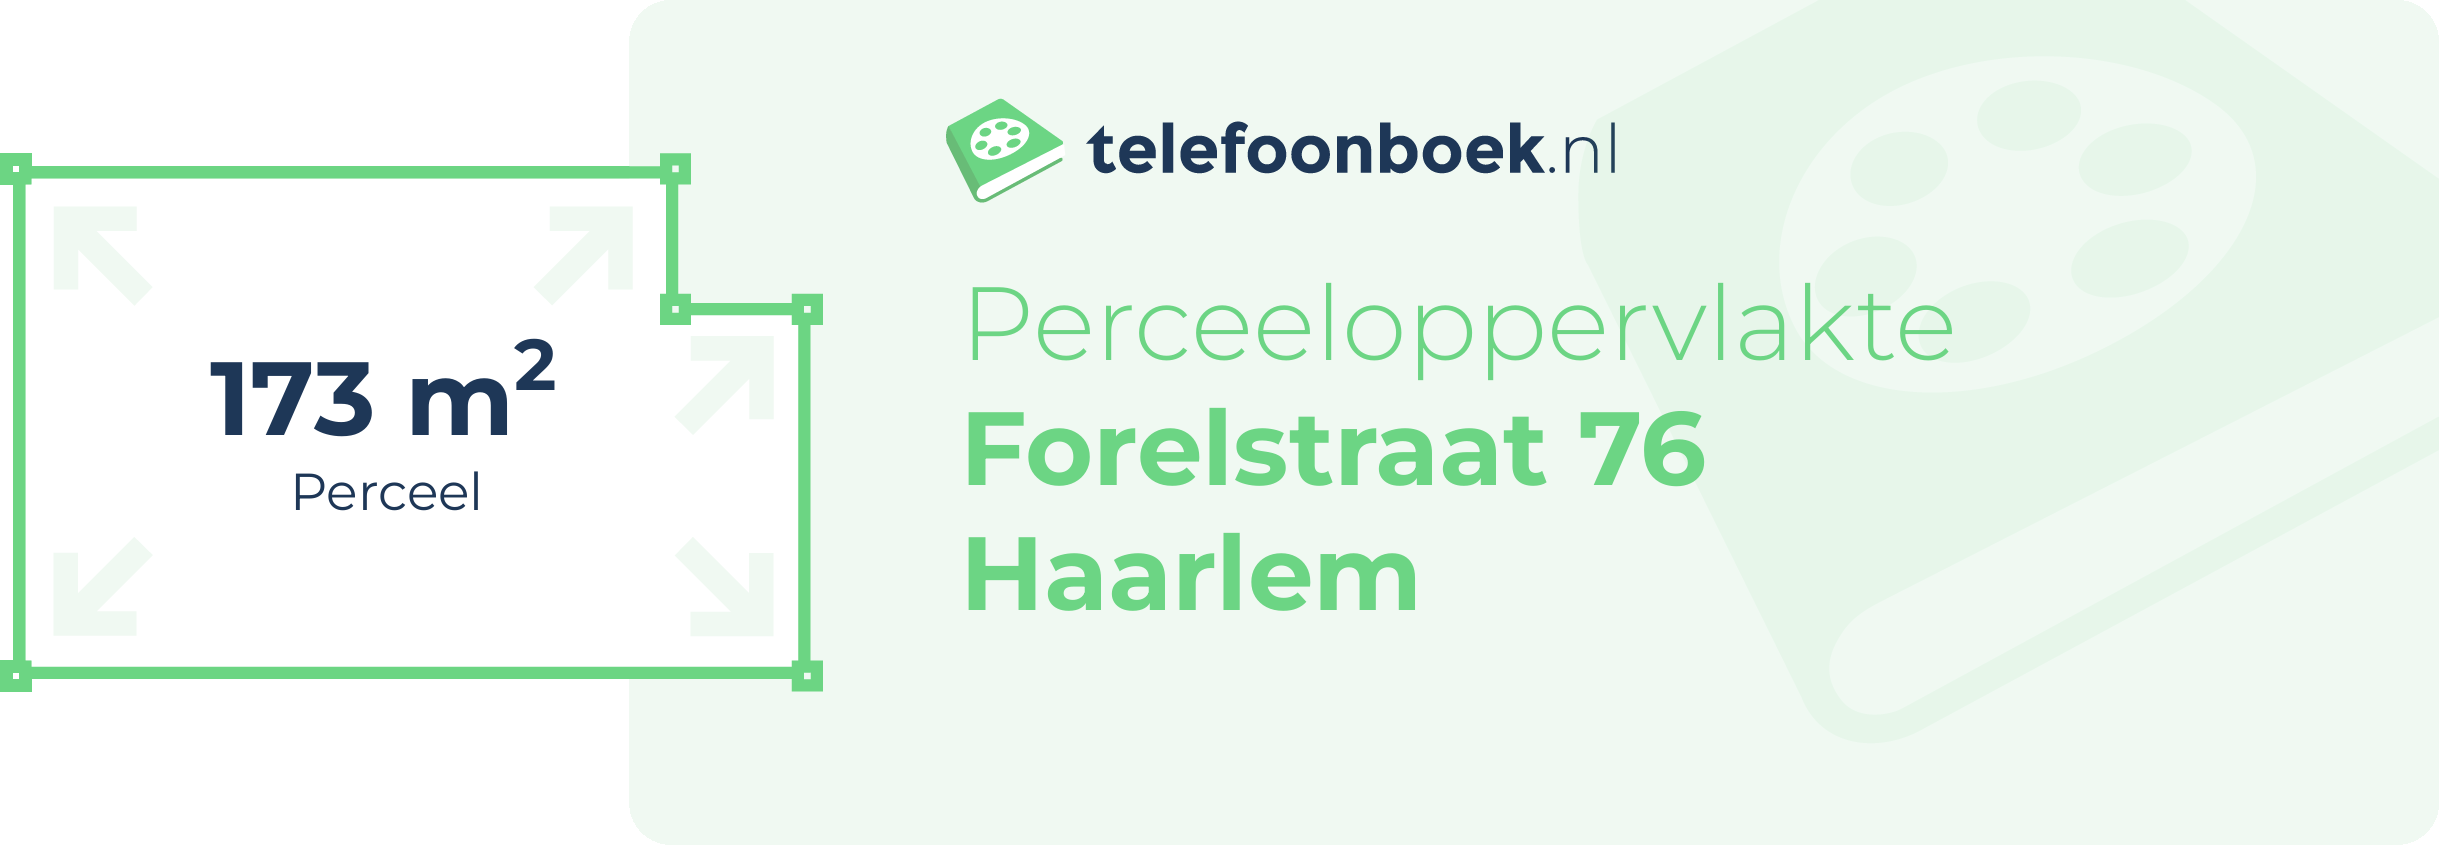 Perceeloppervlakte Forelstraat 76 Haarlem